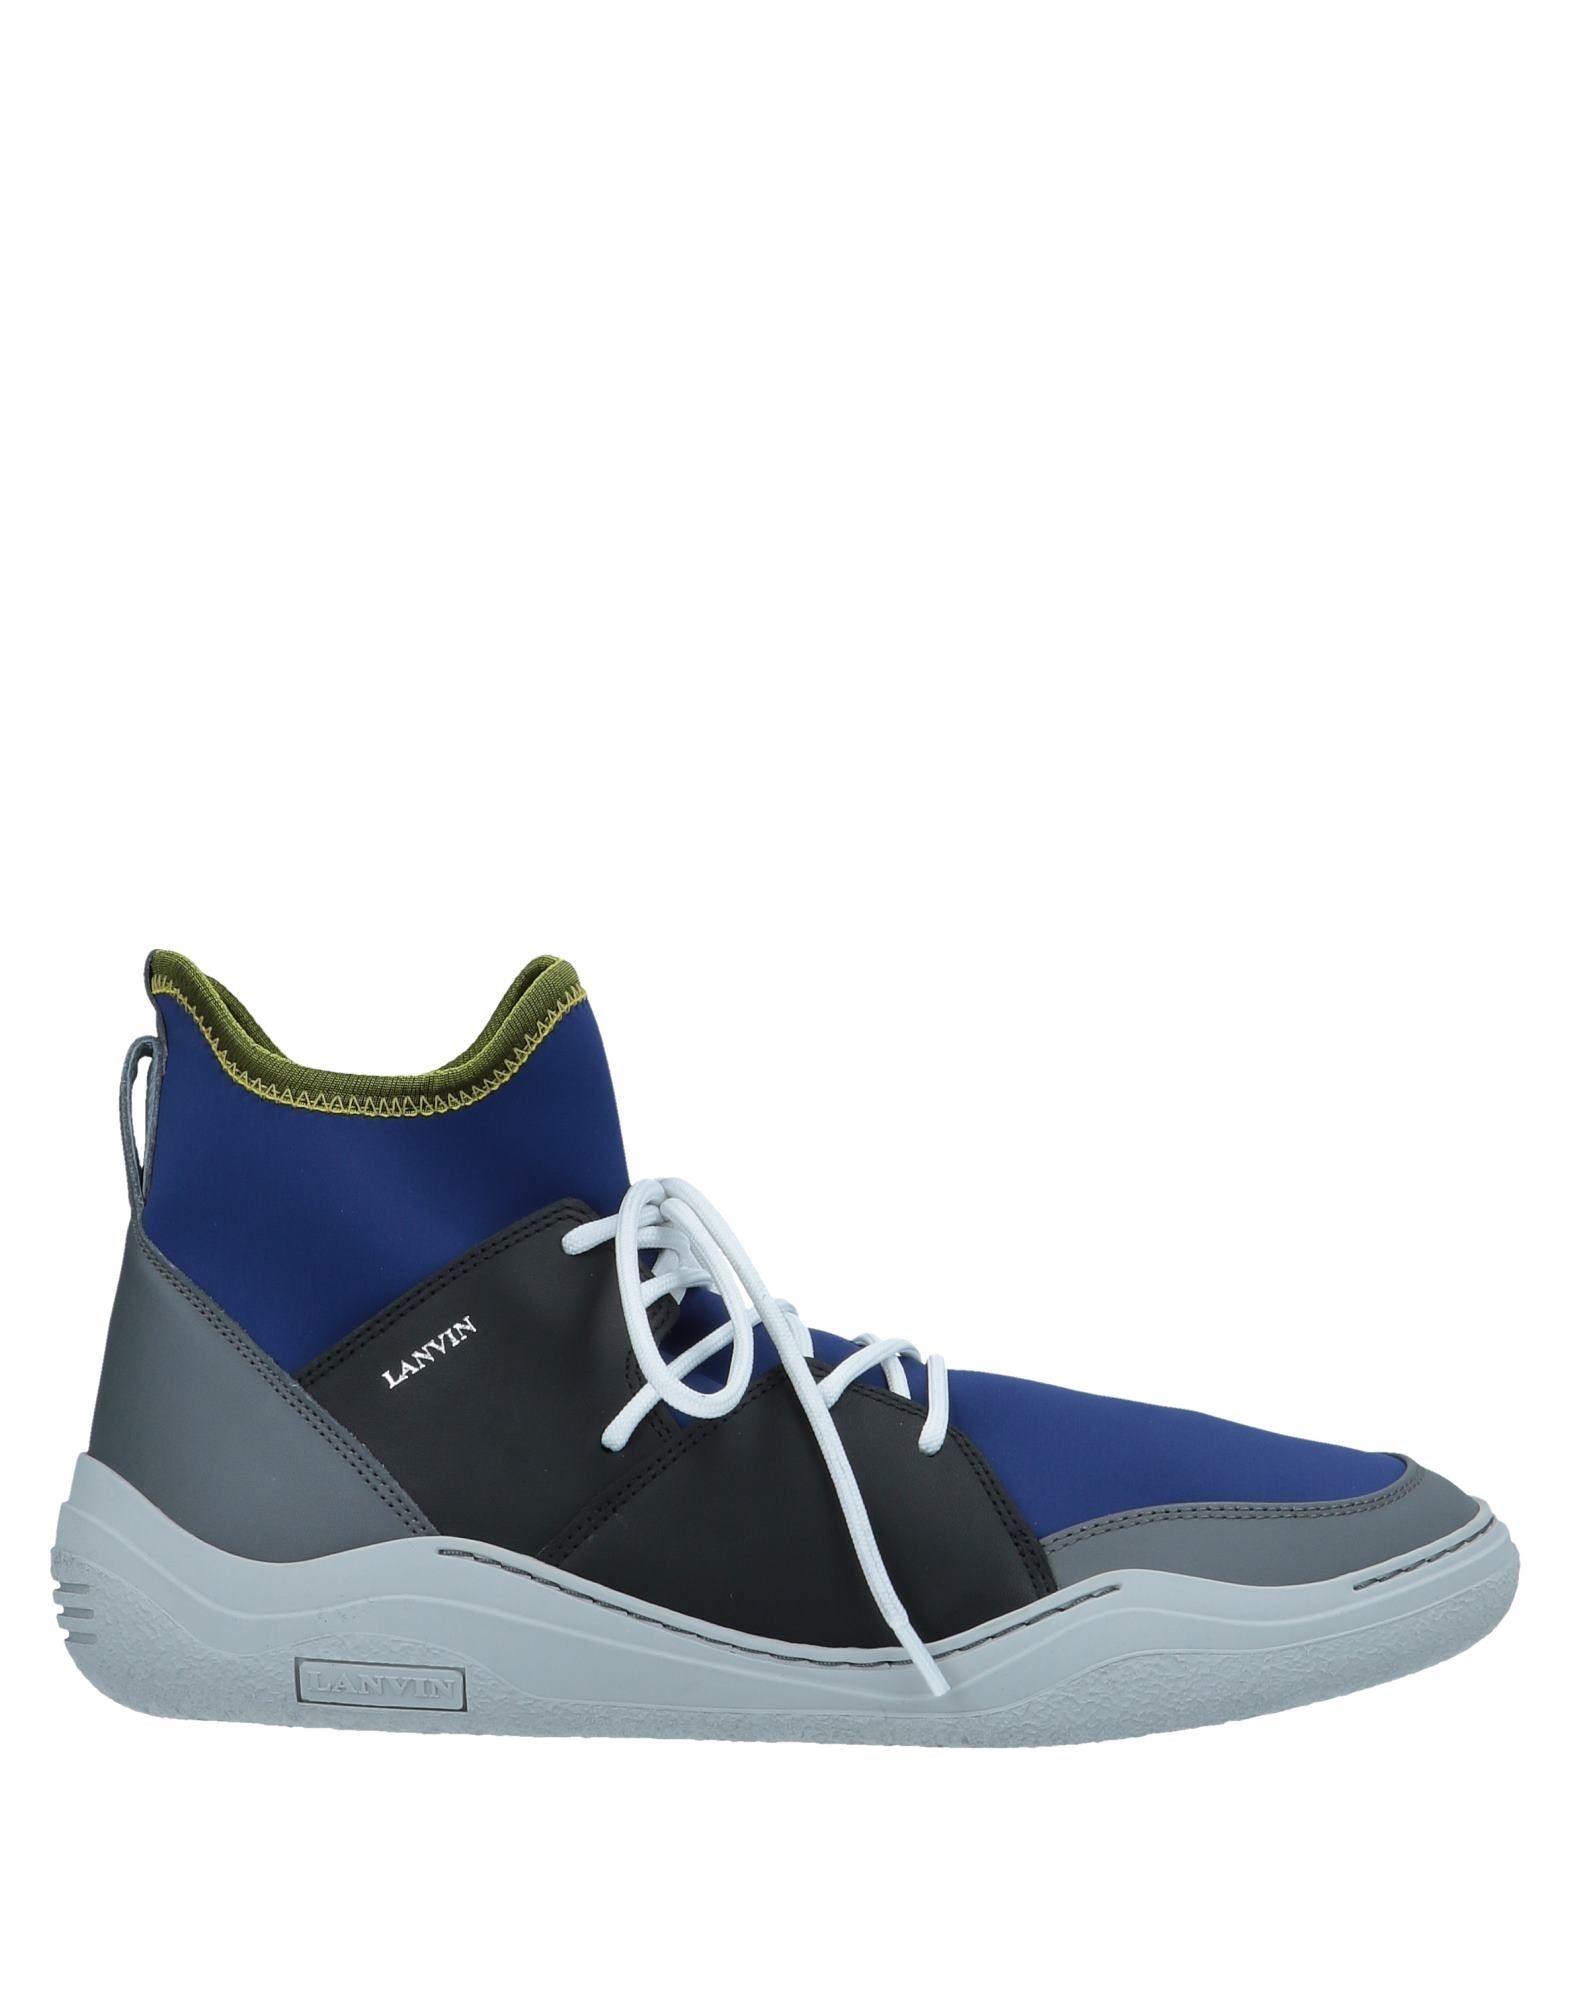 LANVIN High-tops & sneakers - Item 11465345